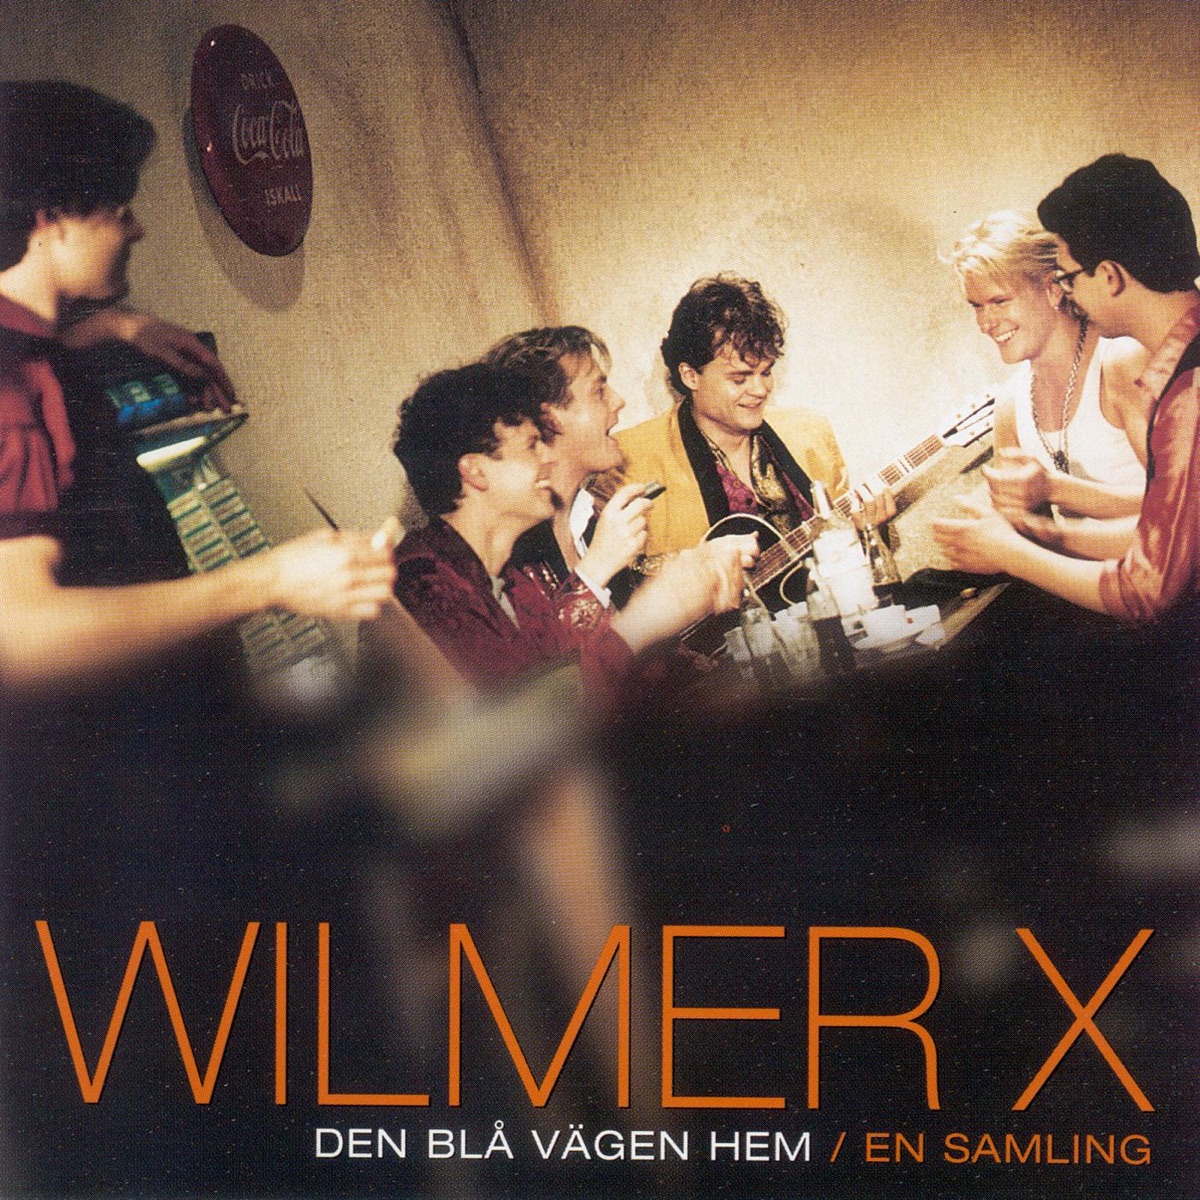 Wilmer X - Jorden Runt I Jul / Nya Planer För Jul (Vinyl 7)